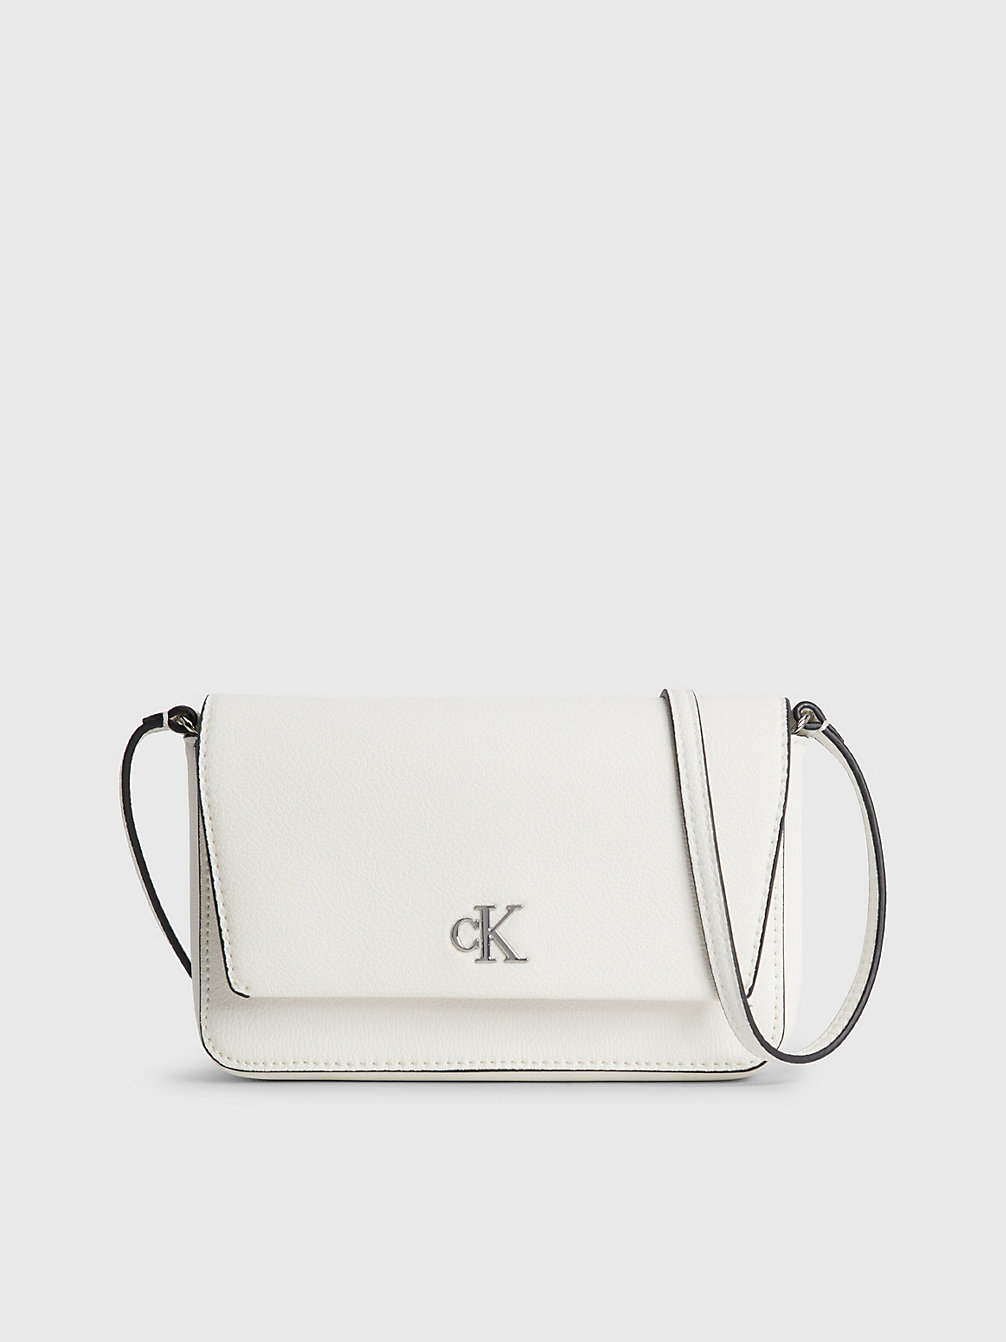 BRIGHT WHITE > Portemonnaie-Tasche Aus Recyceltem Material > undefined Damen - Calvin Klein